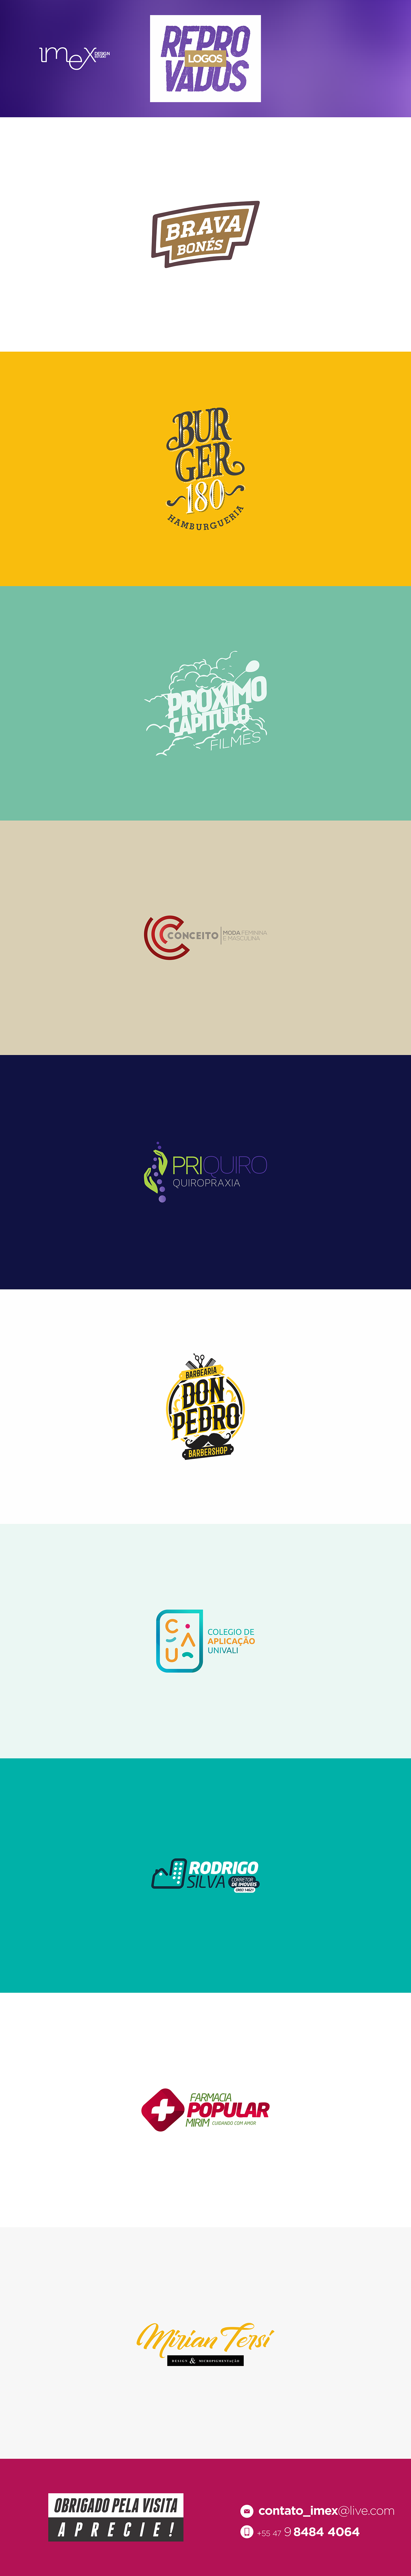 logos Logotipo logotipos  identidade visual nao aprovado fail balneário camboriú Santa Catarina social media reprovado